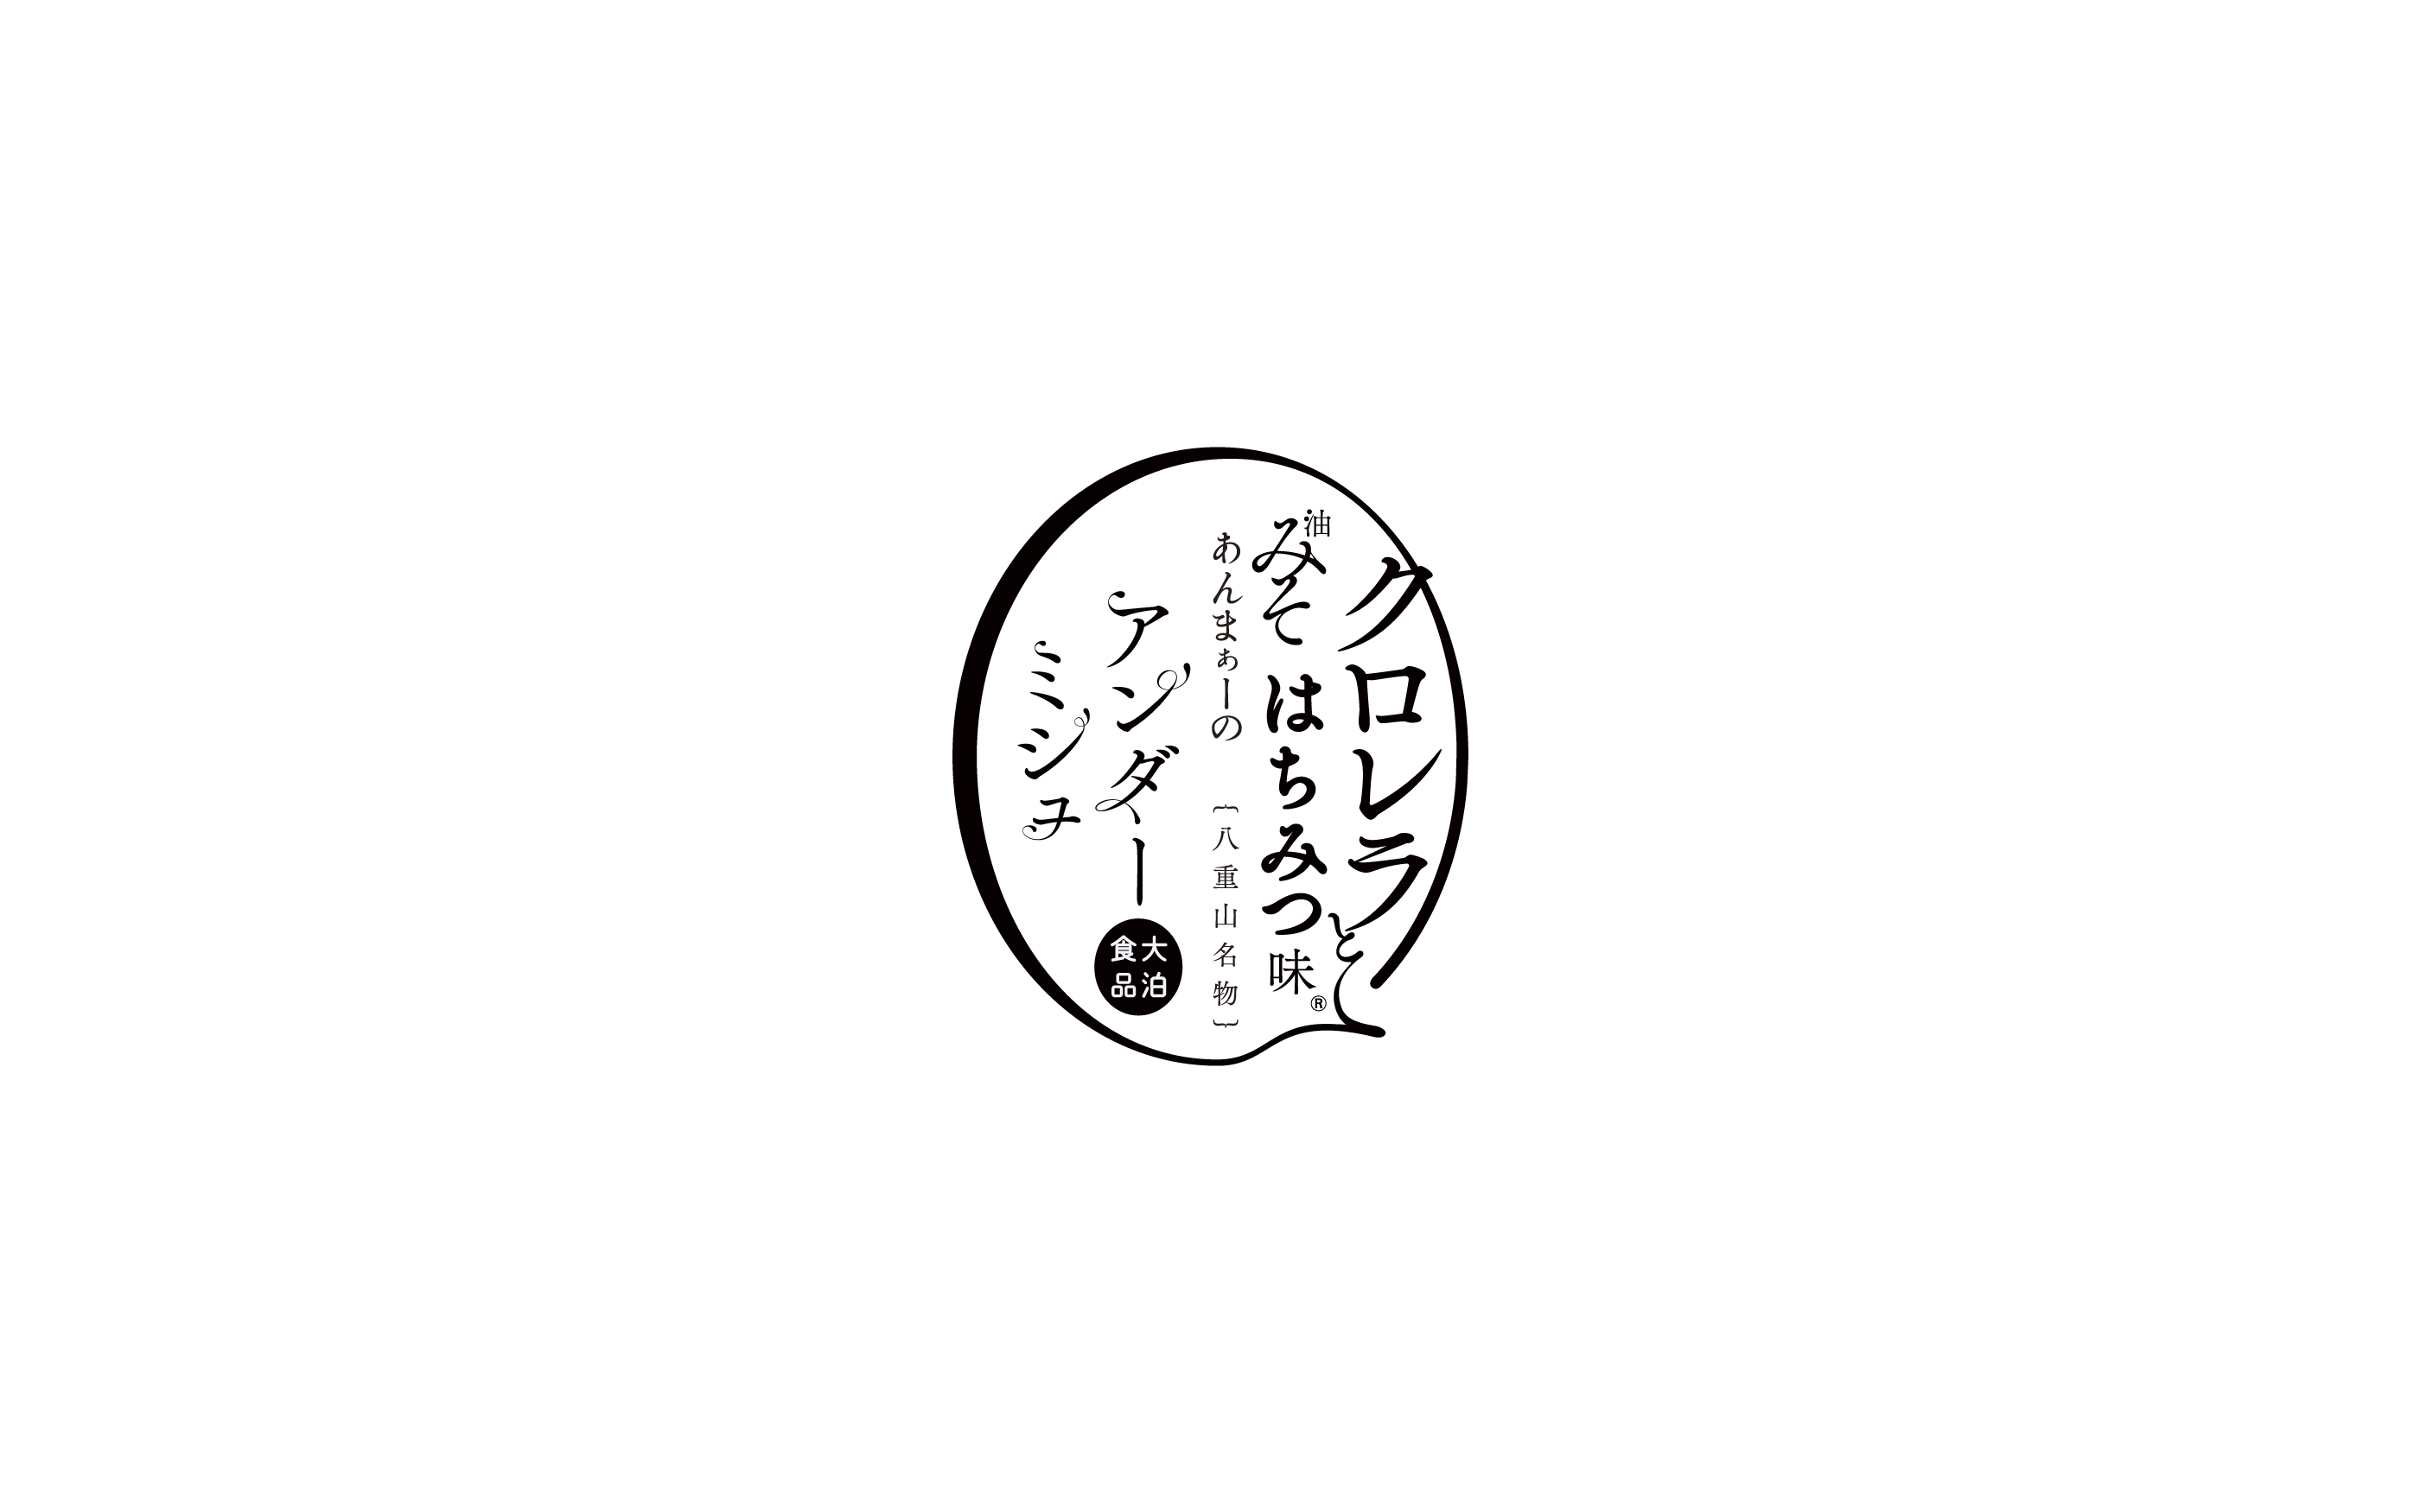 大泊食品 油味噌 クロレラ  ロゴ, odomarisyokuhin aburamiso chlorella bi